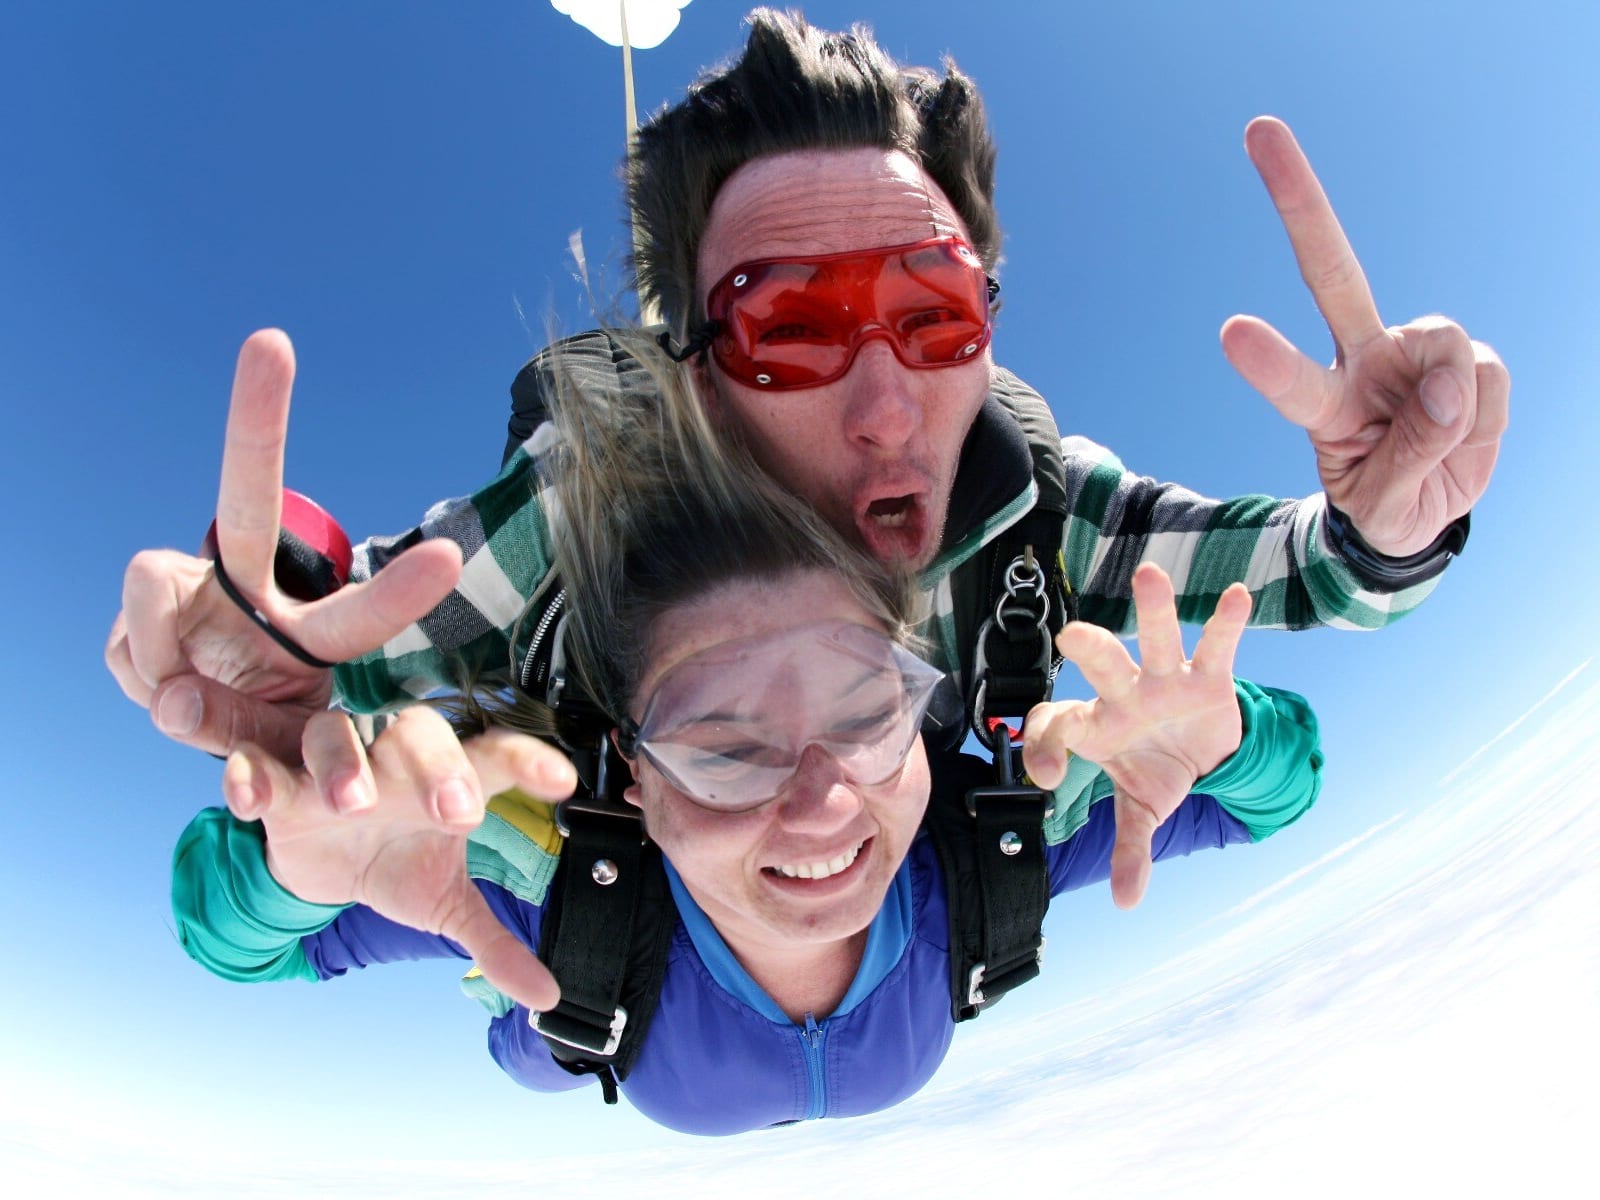 グアム スカイダイビング 一度飛べば世界が変わる 上空2 400m 4 0mからのフリーフォール 無料送迎サービスあり グアムの観光 オプショナルツアー専門 Veltra ベルトラ